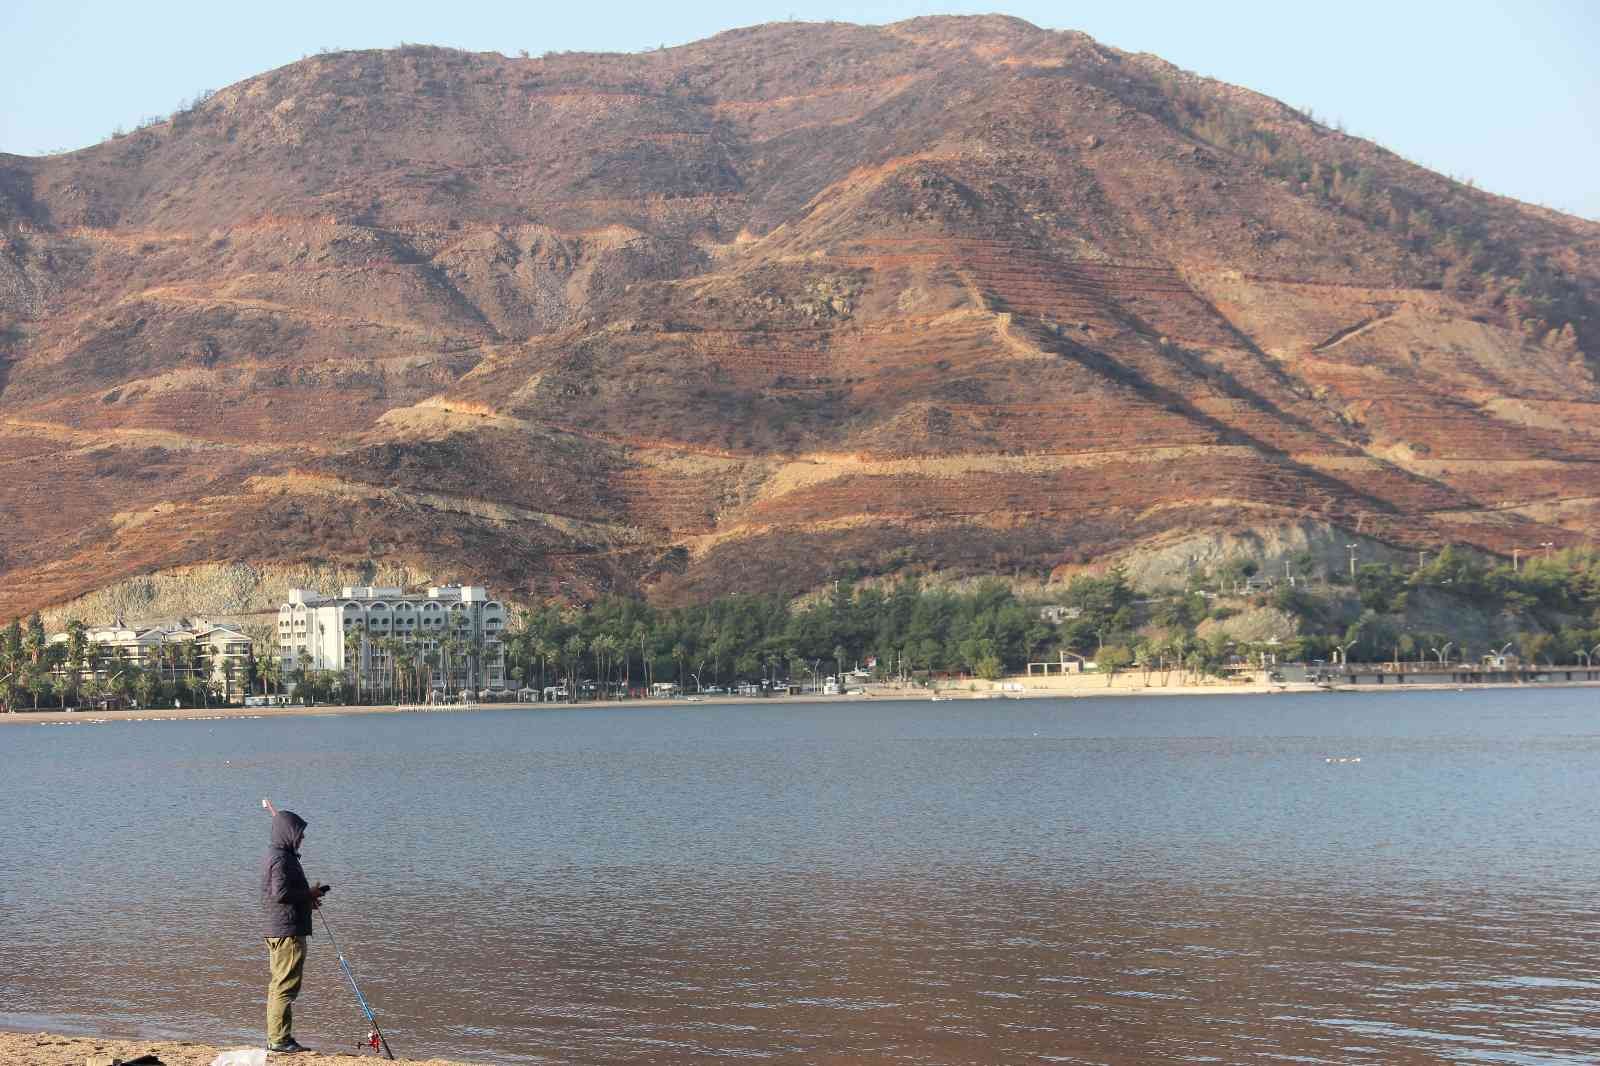 Sezon kapandı, dünyaca ünlü plaj amatör balıkçılara kaldı #mugla